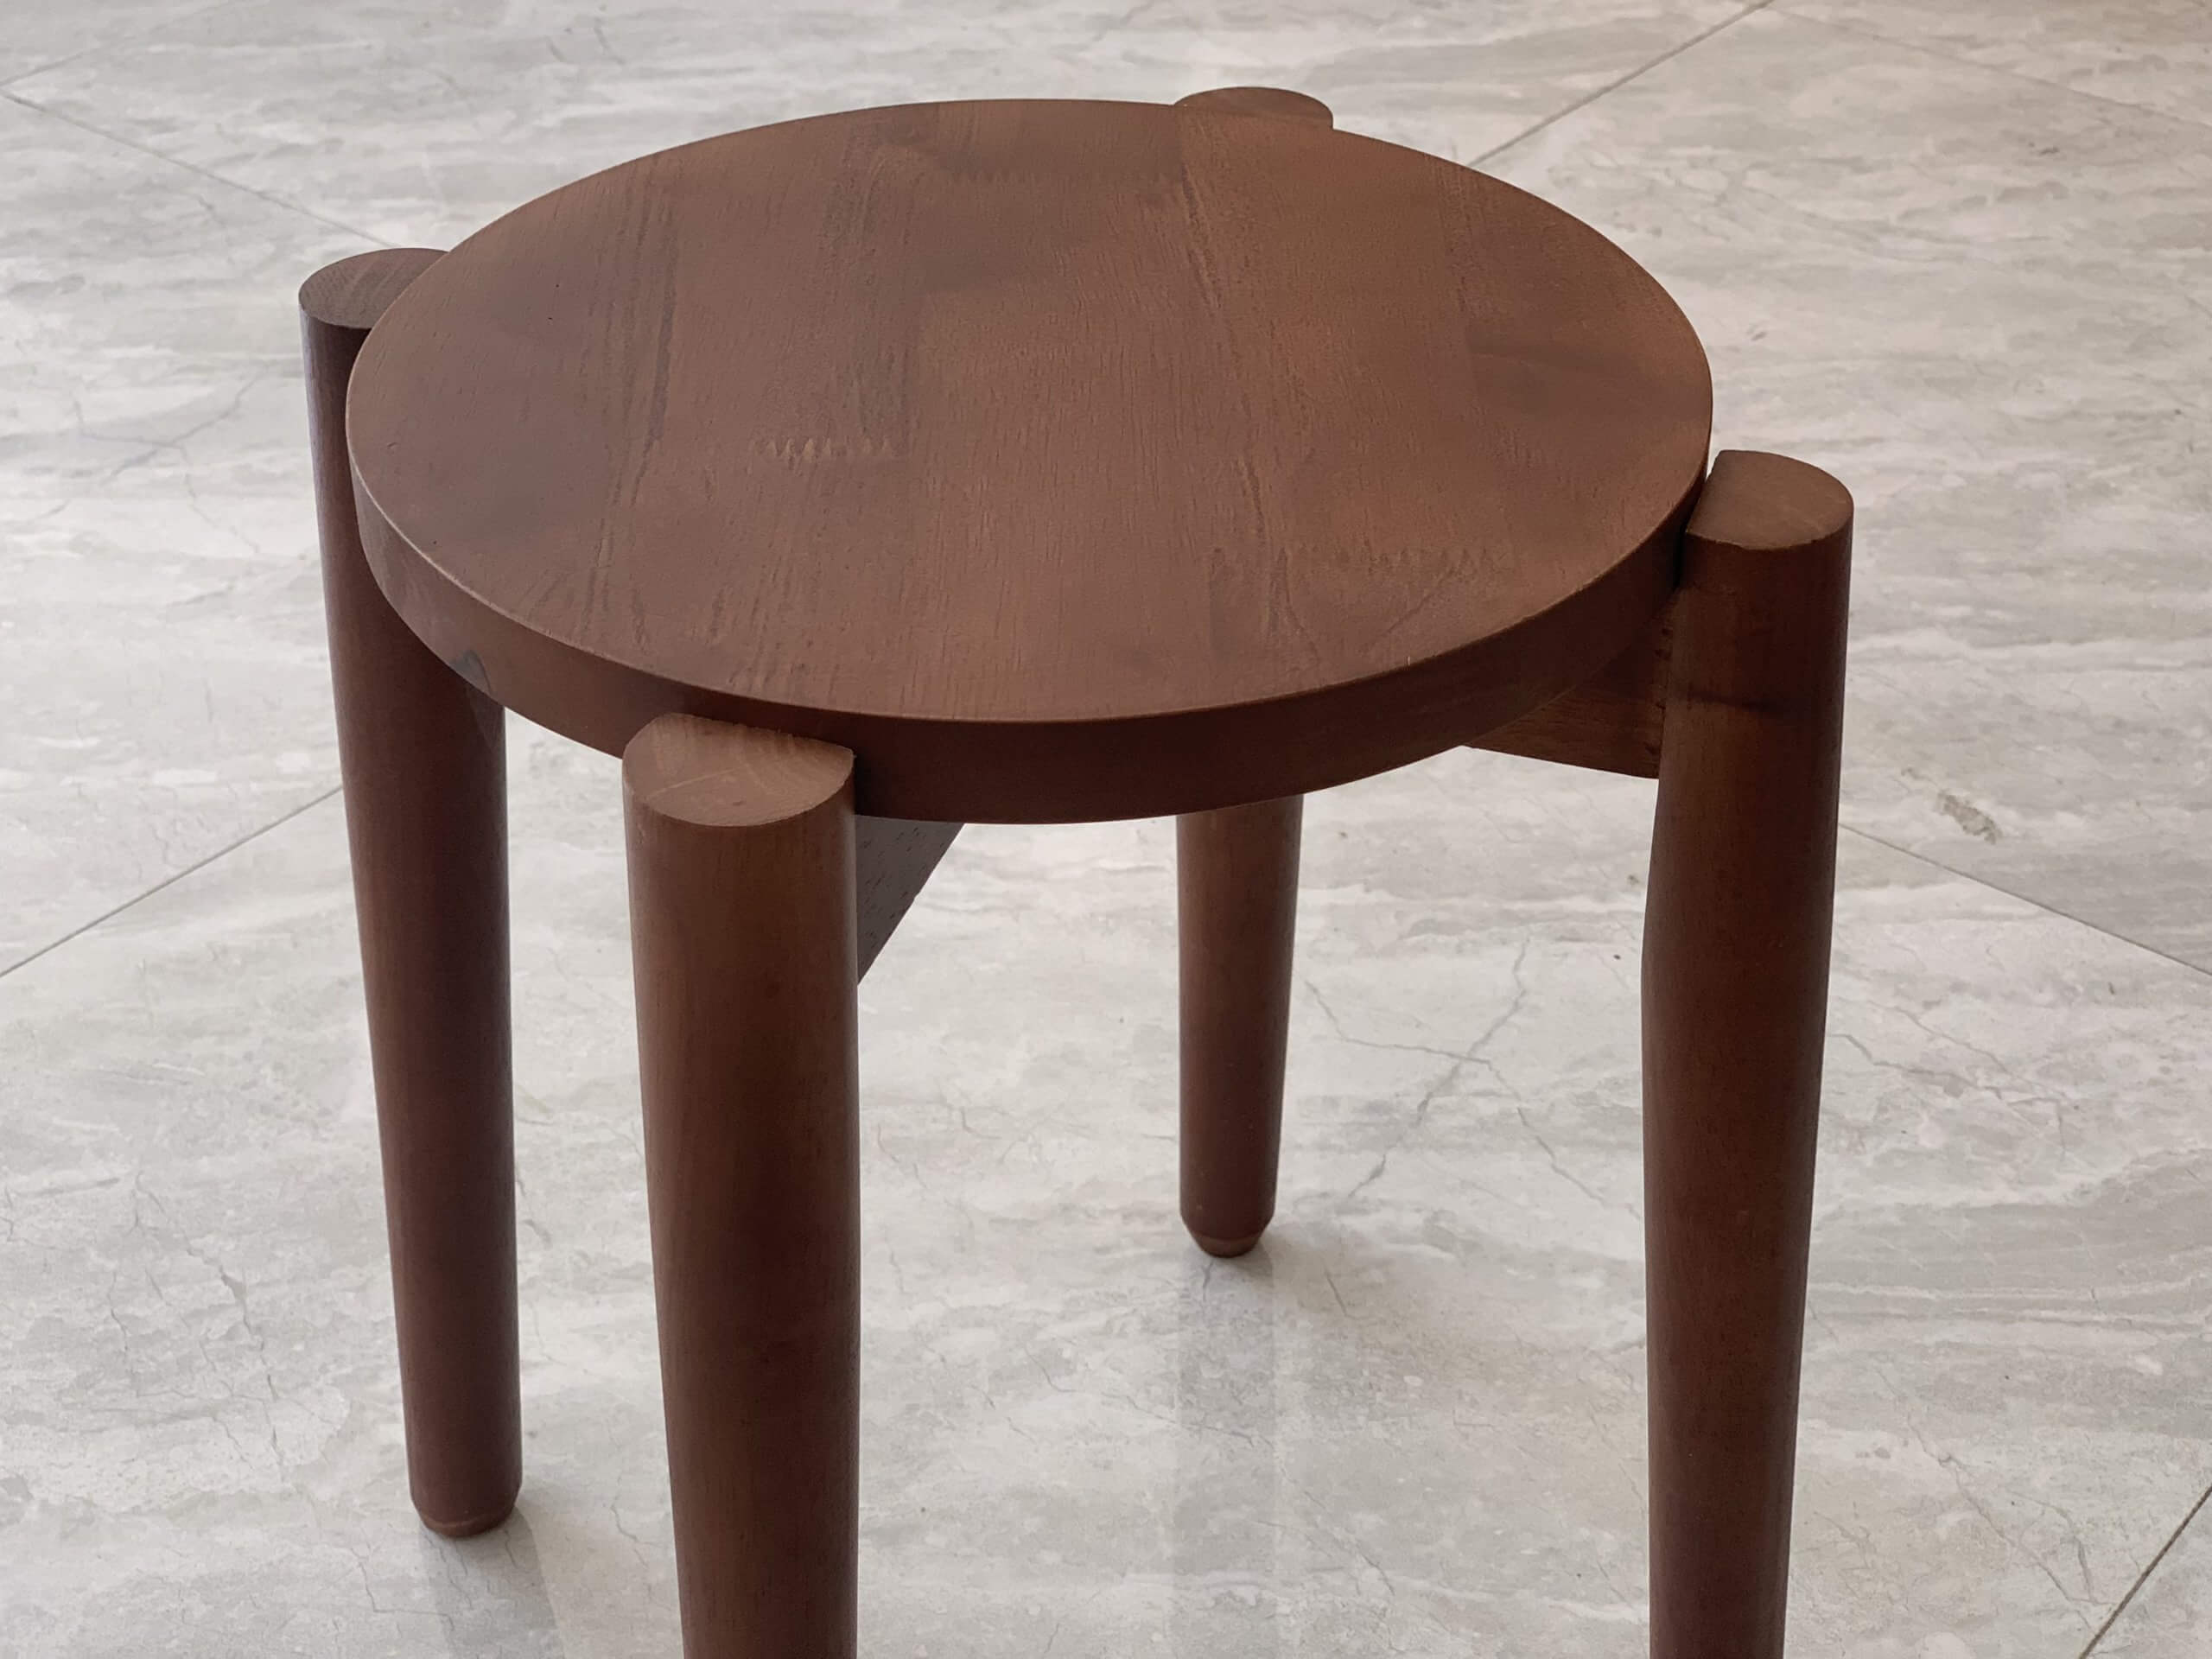 [Review] Ghế gỗ tự nhiên mặt tròn mua trên Shopee cho bàn làm việc, bàn trang điểm